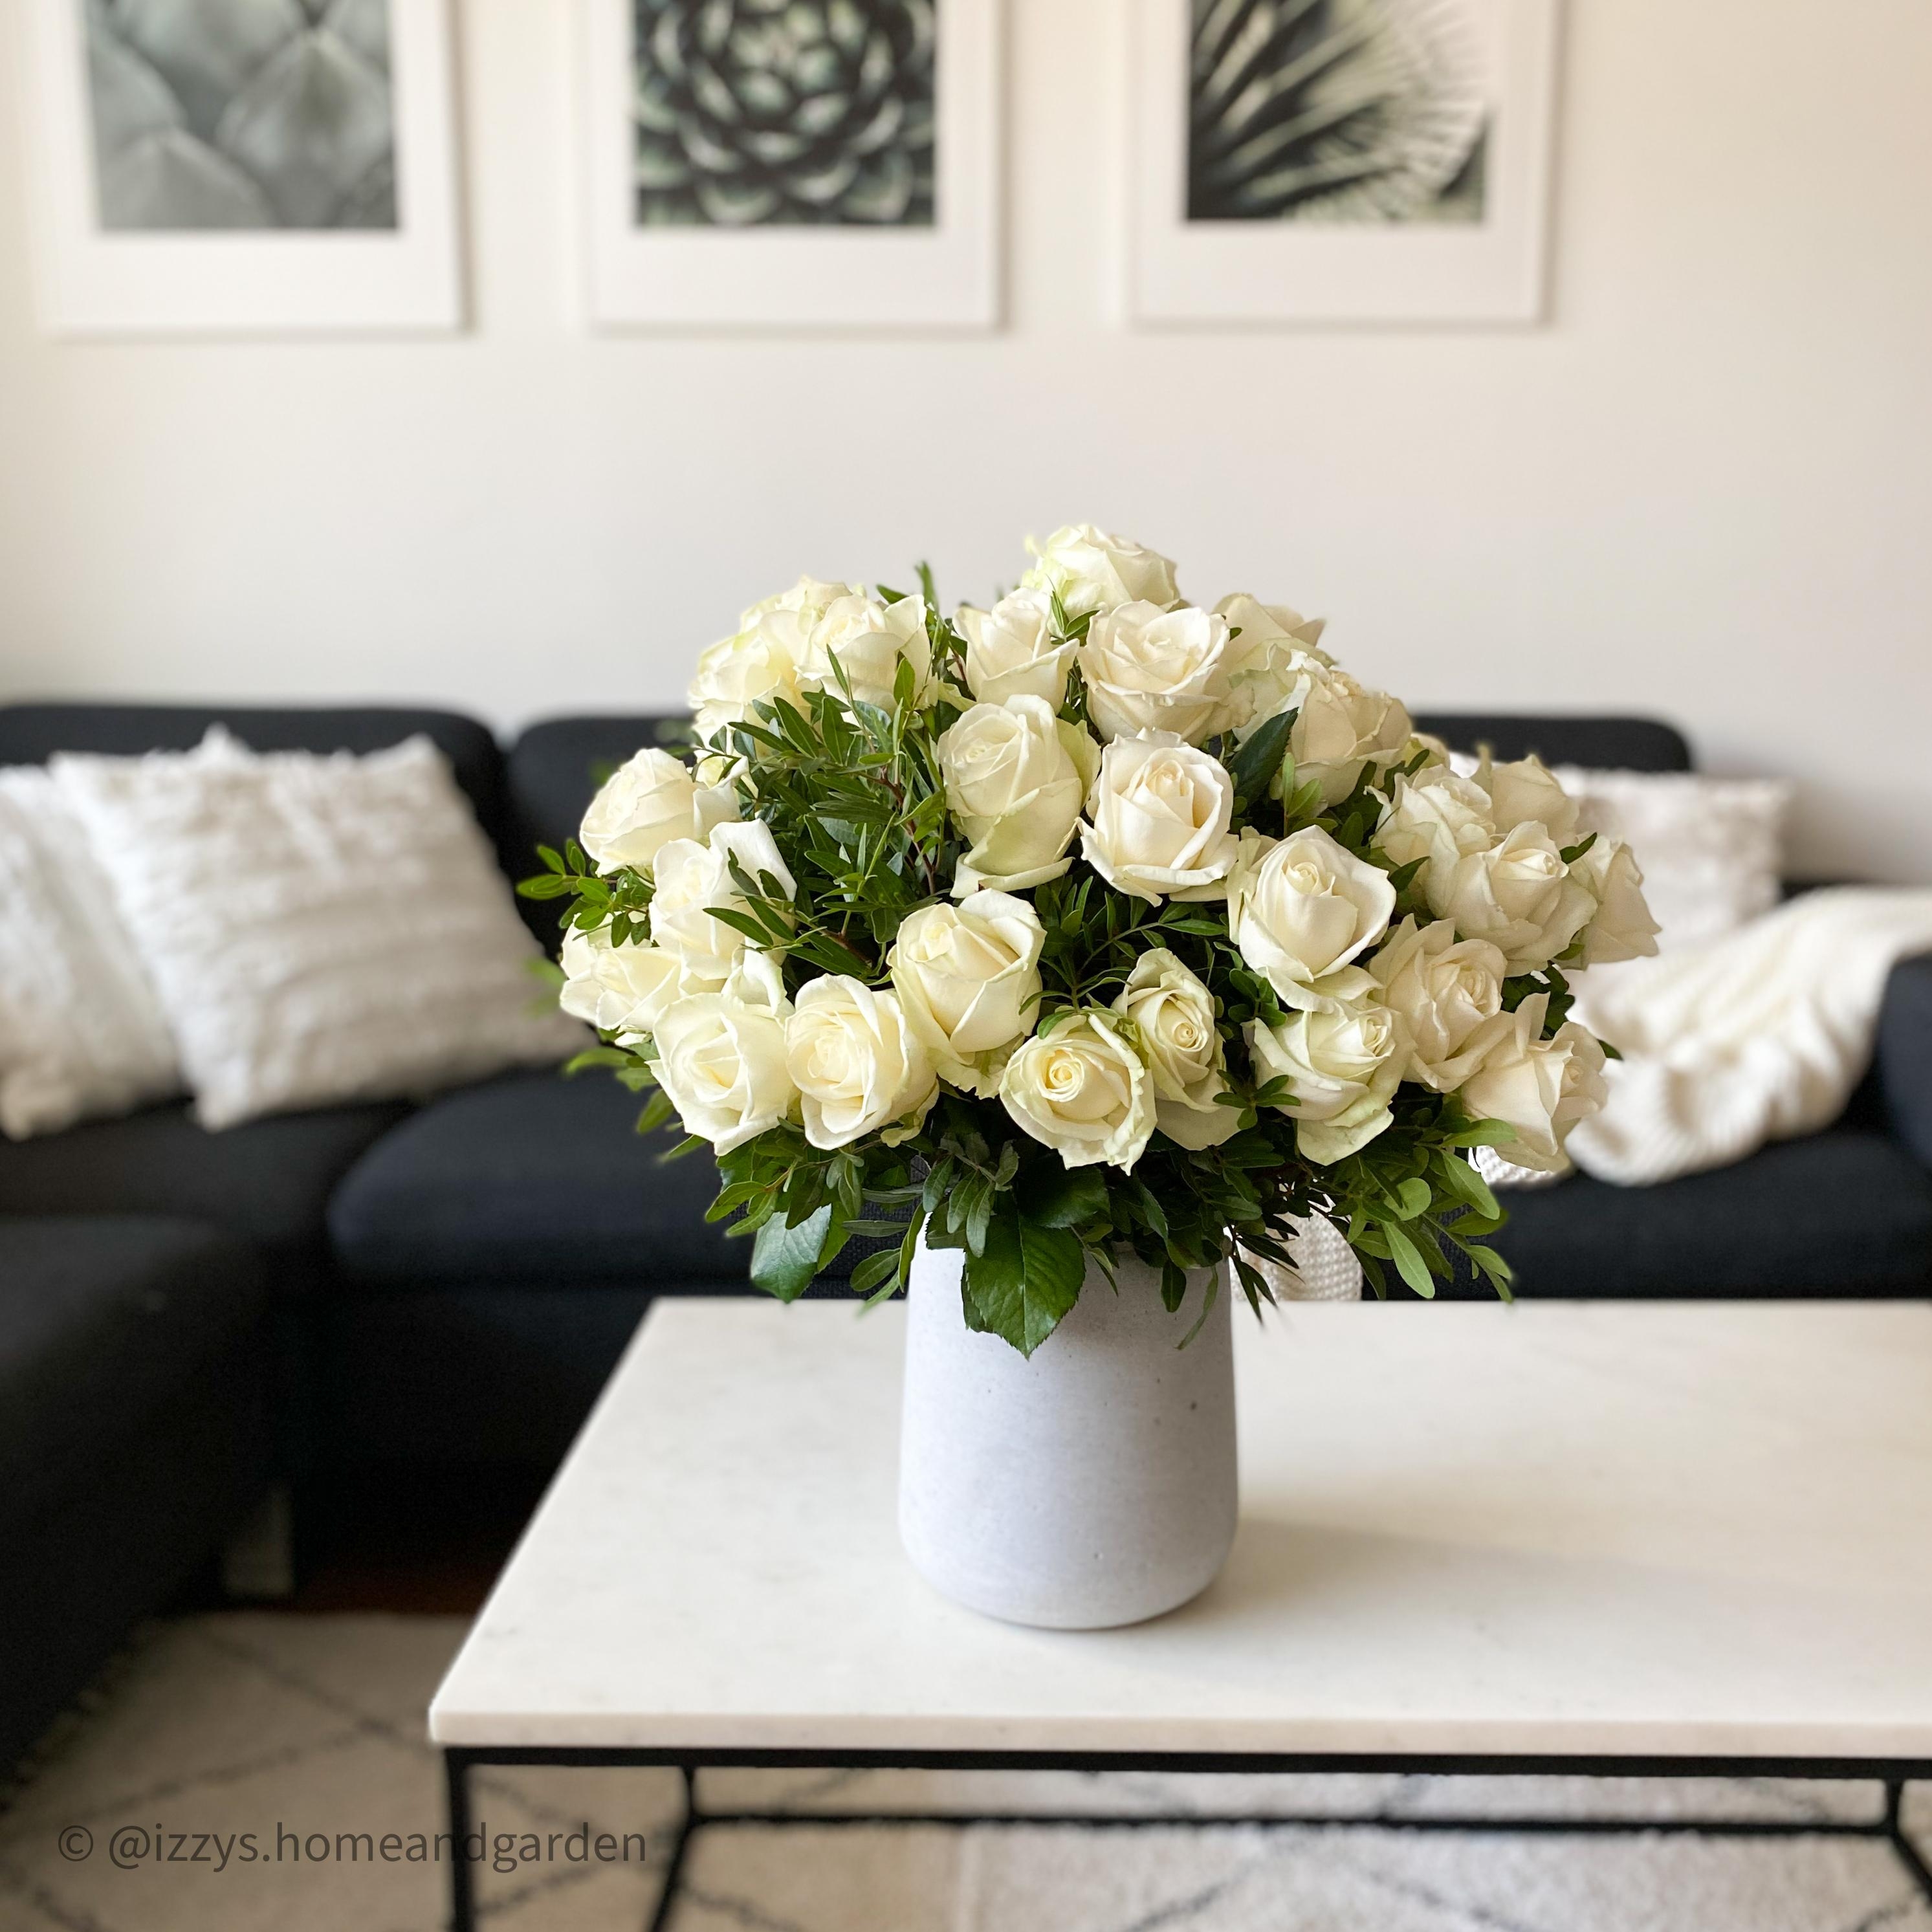 #whiteinterior #whiteliving #livingroom #rosen #roses #whiteflowers #livingroominspo #wohnzimmer #freshflowers